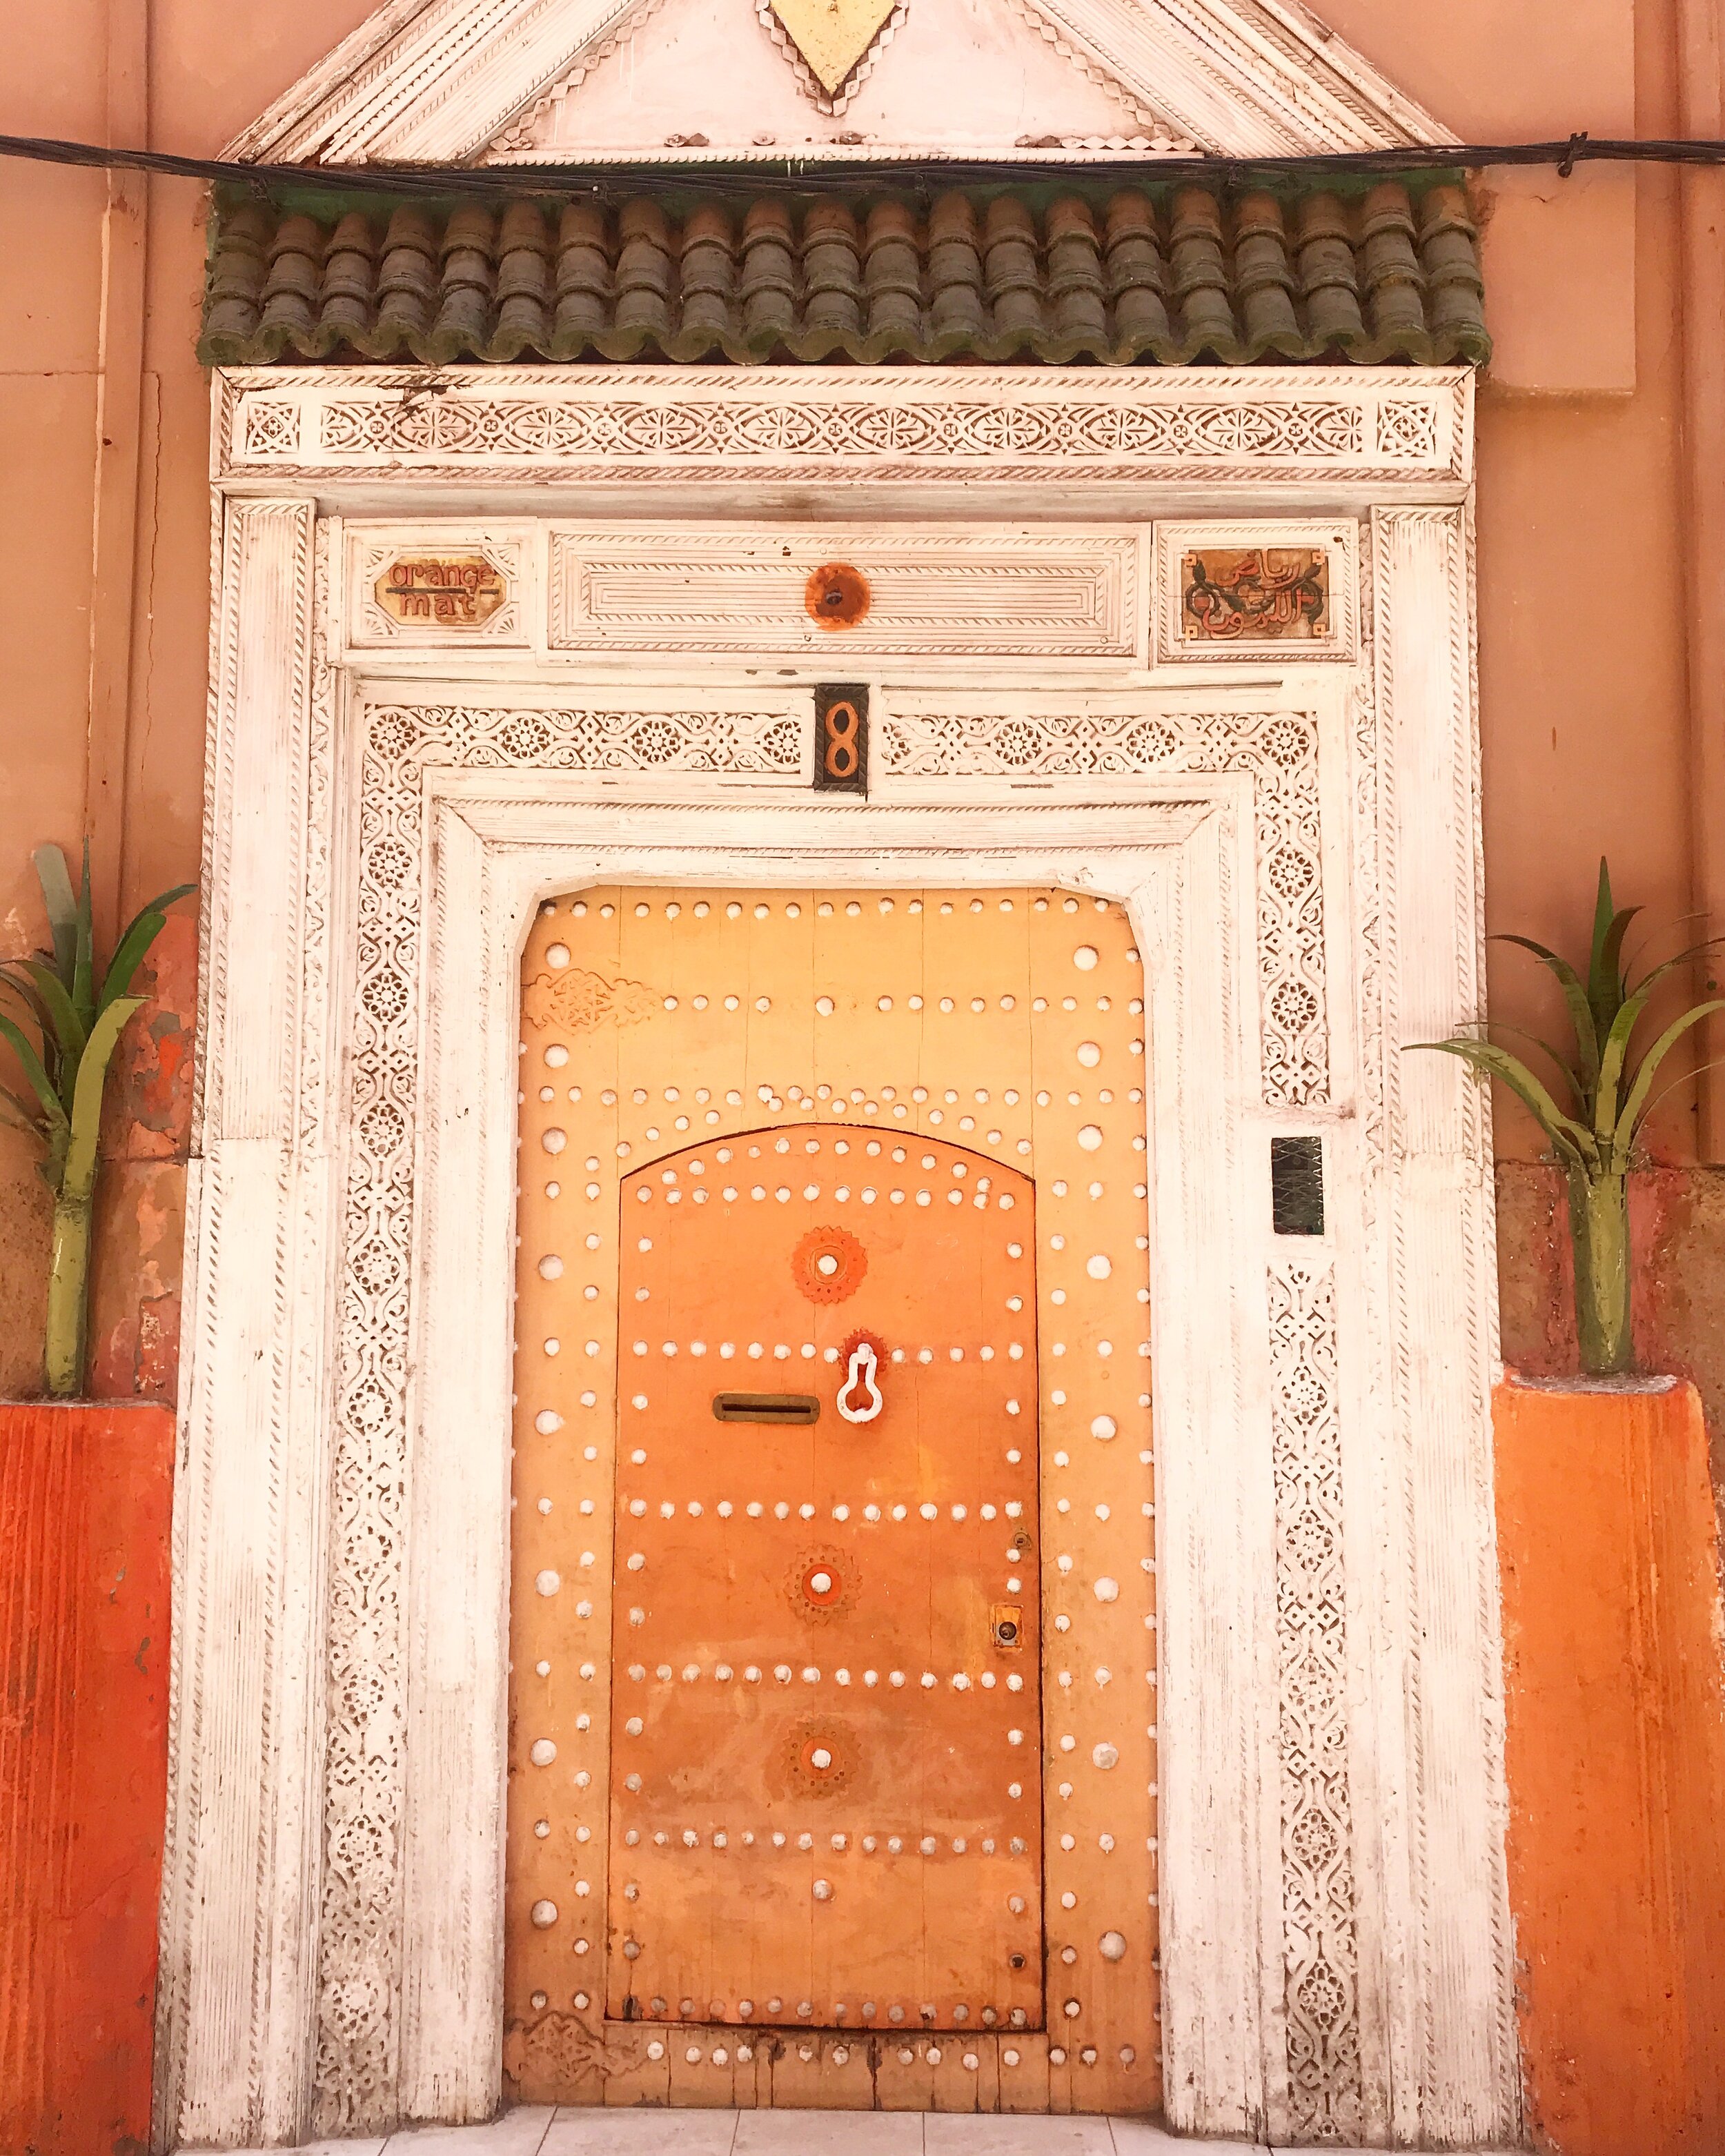 Marrakech orange door 2019.jpeg